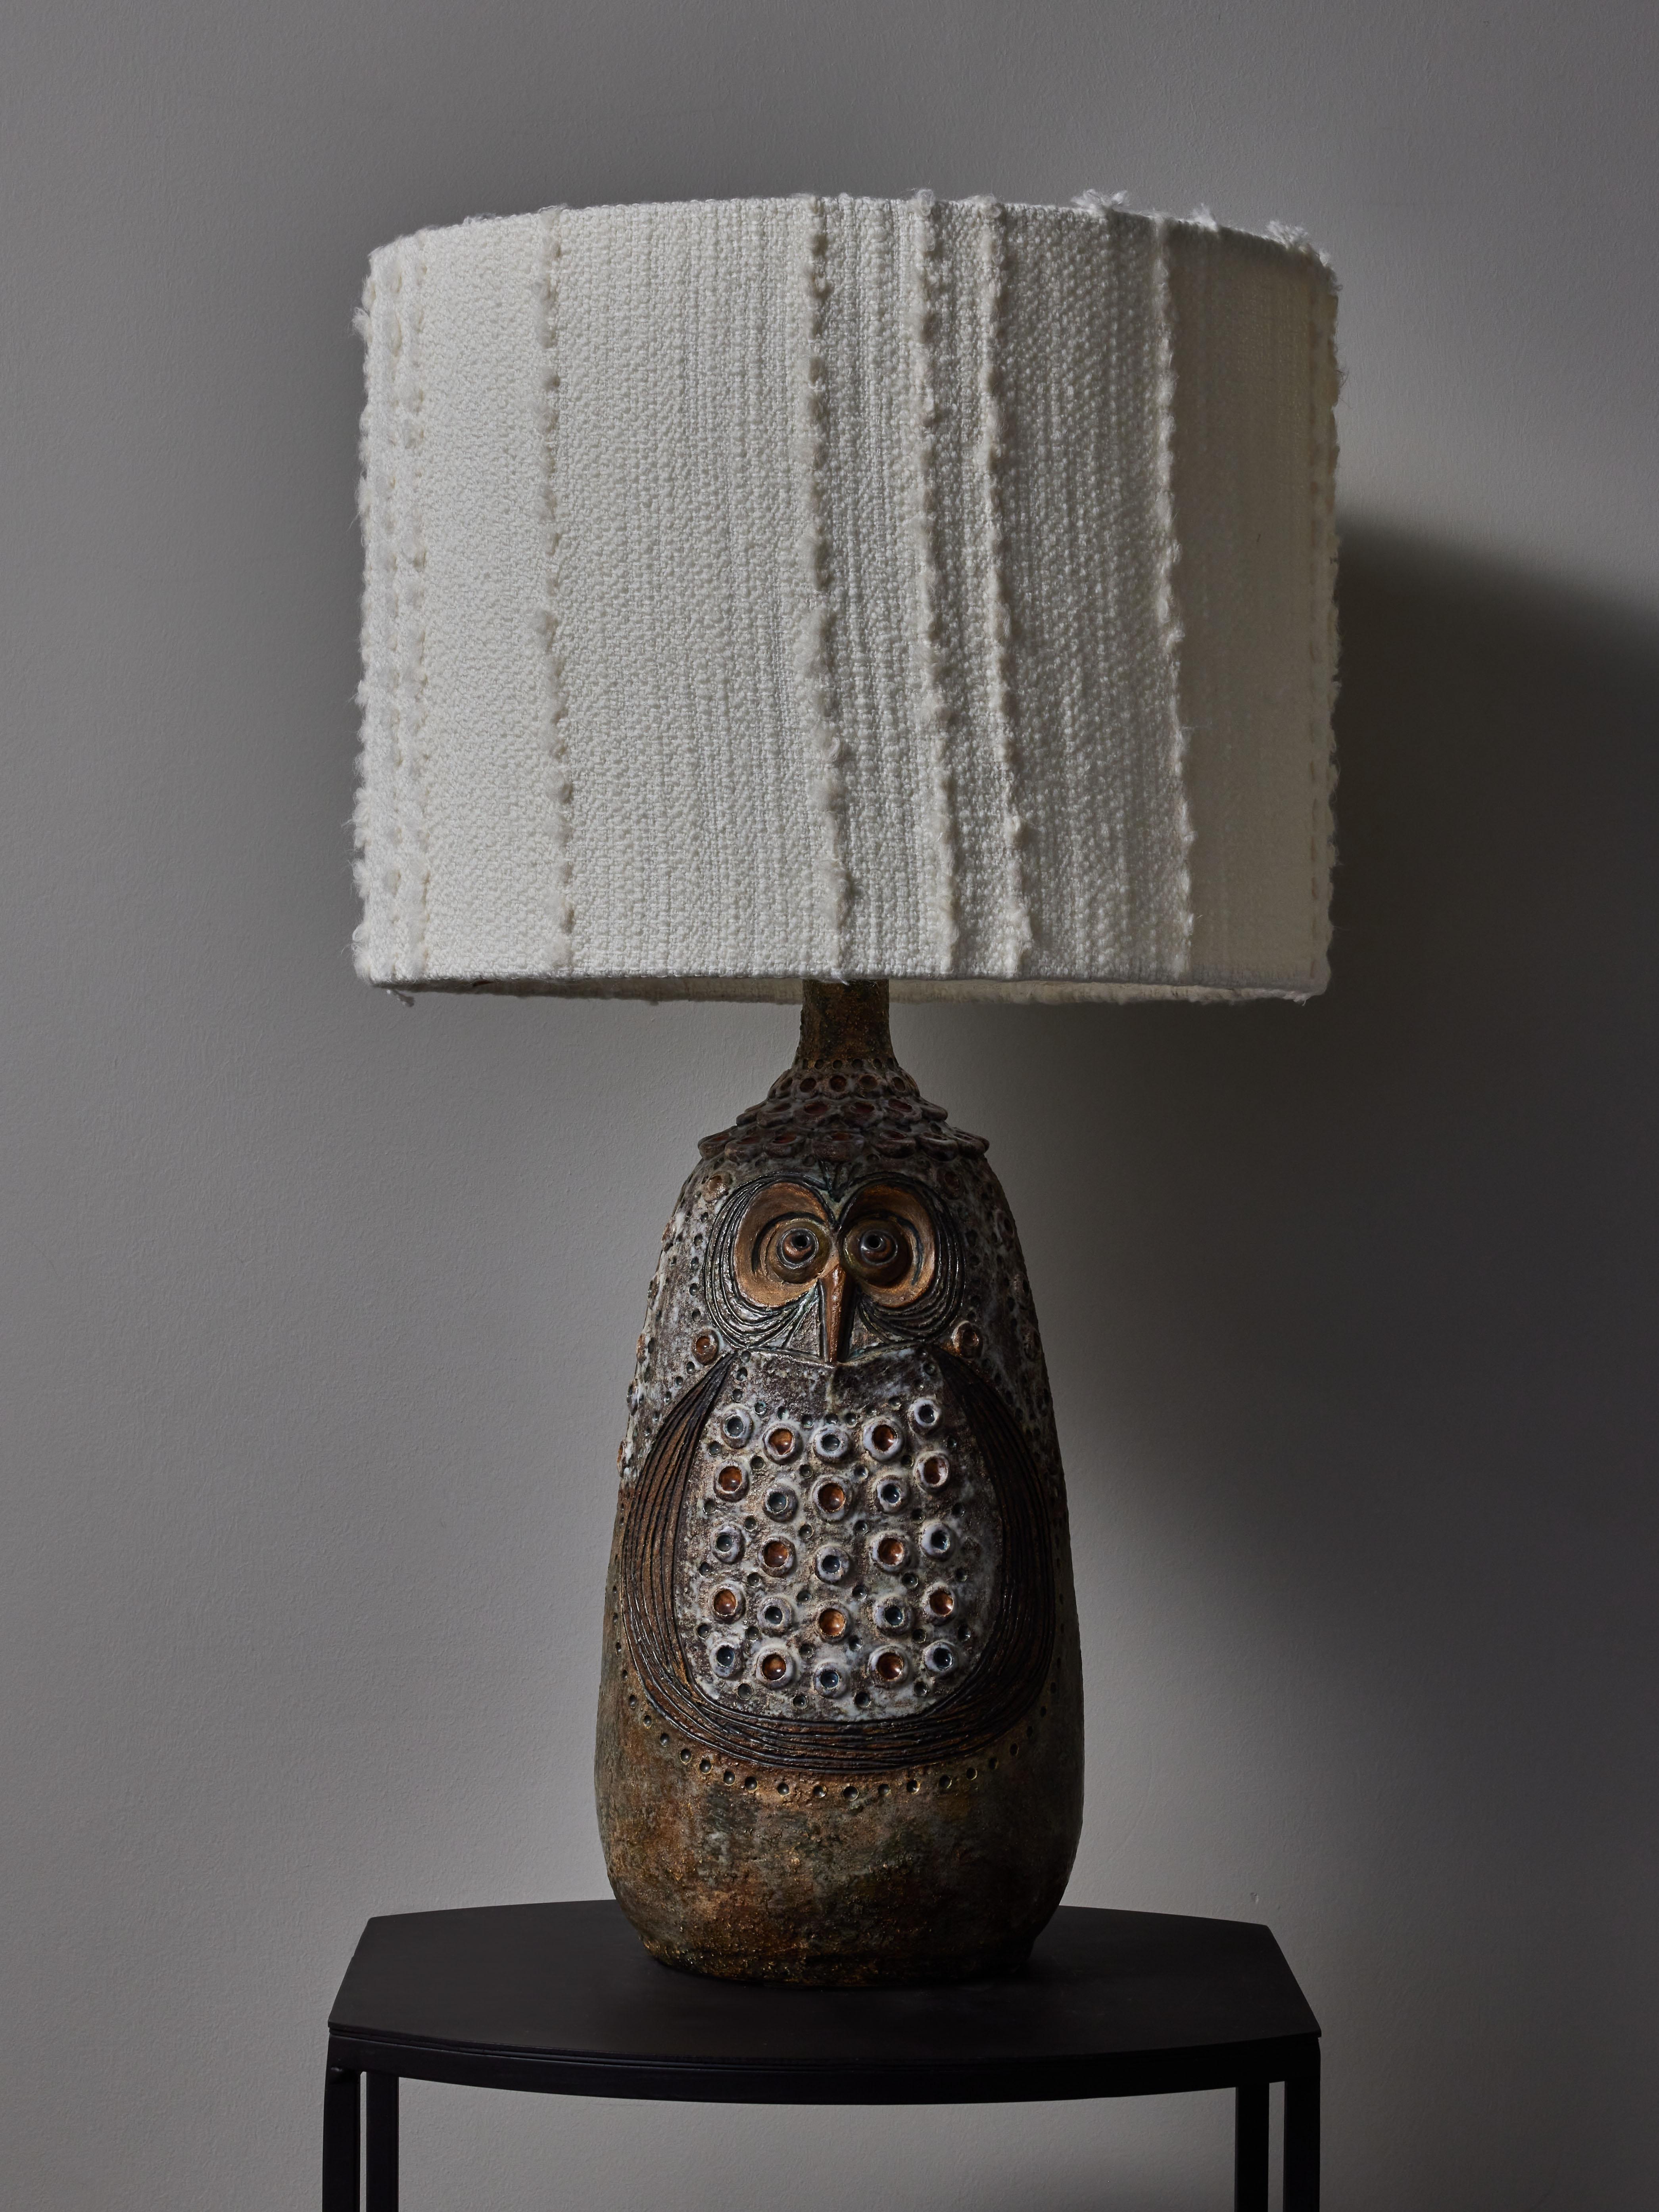 Lampe de table vintage en céramique en forme de hibou avec des petits points de couleurs par Raphael Giarrusso circa 1966.

Raphaël Giarrusso (1925-1986)
Peintre, sculpteur et céramiste canadien qui s'est établi en France de 1948 à sa mort en 1986.